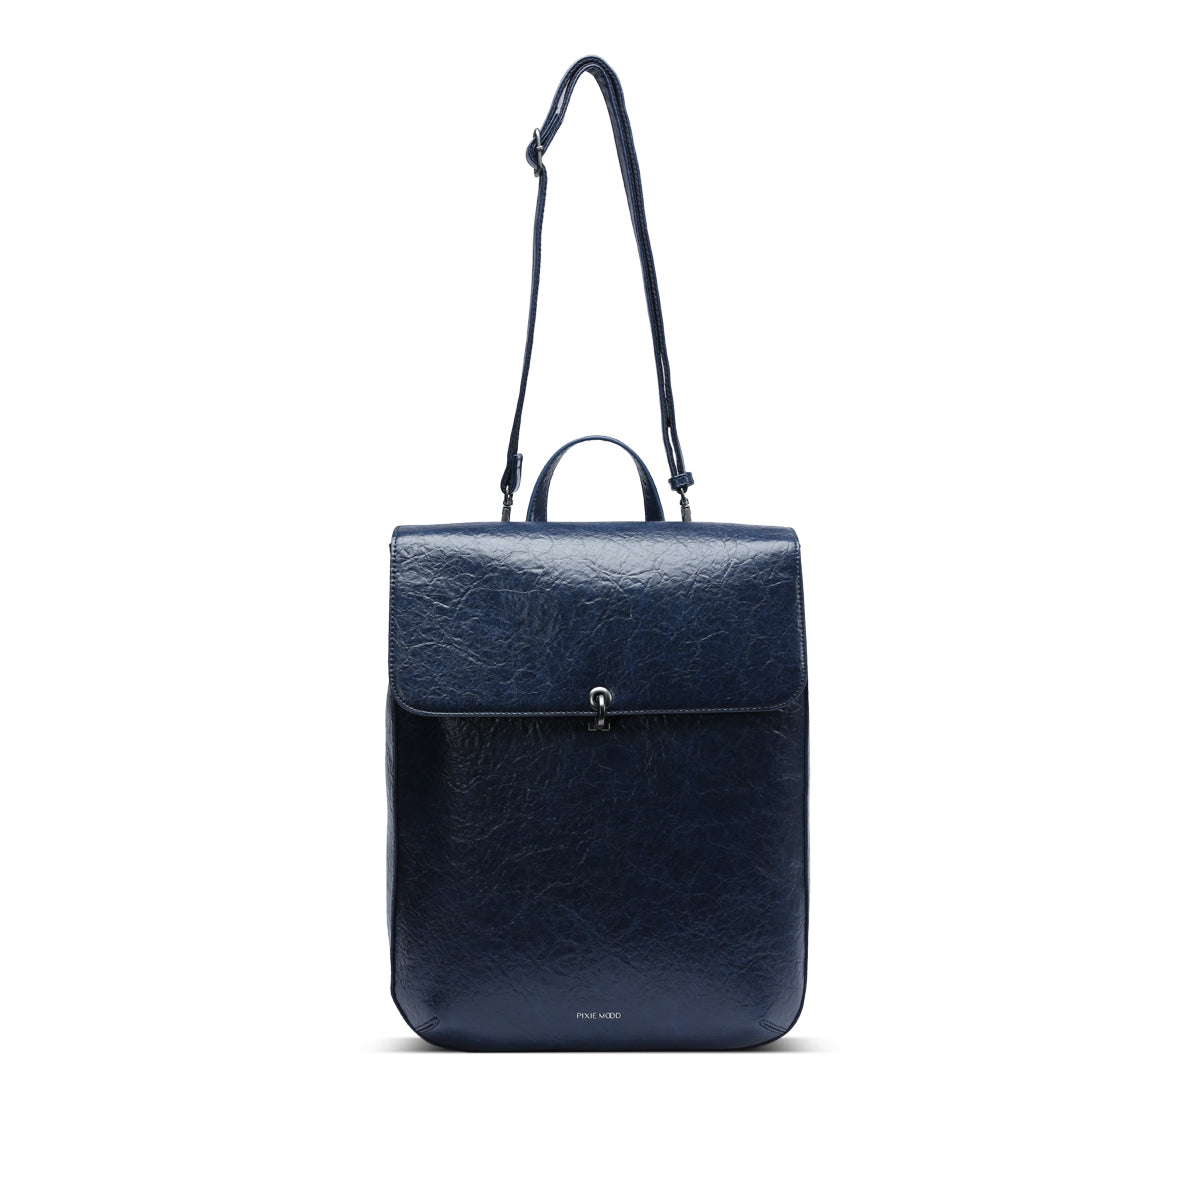 The Nyla Backpack in Vintage Blue